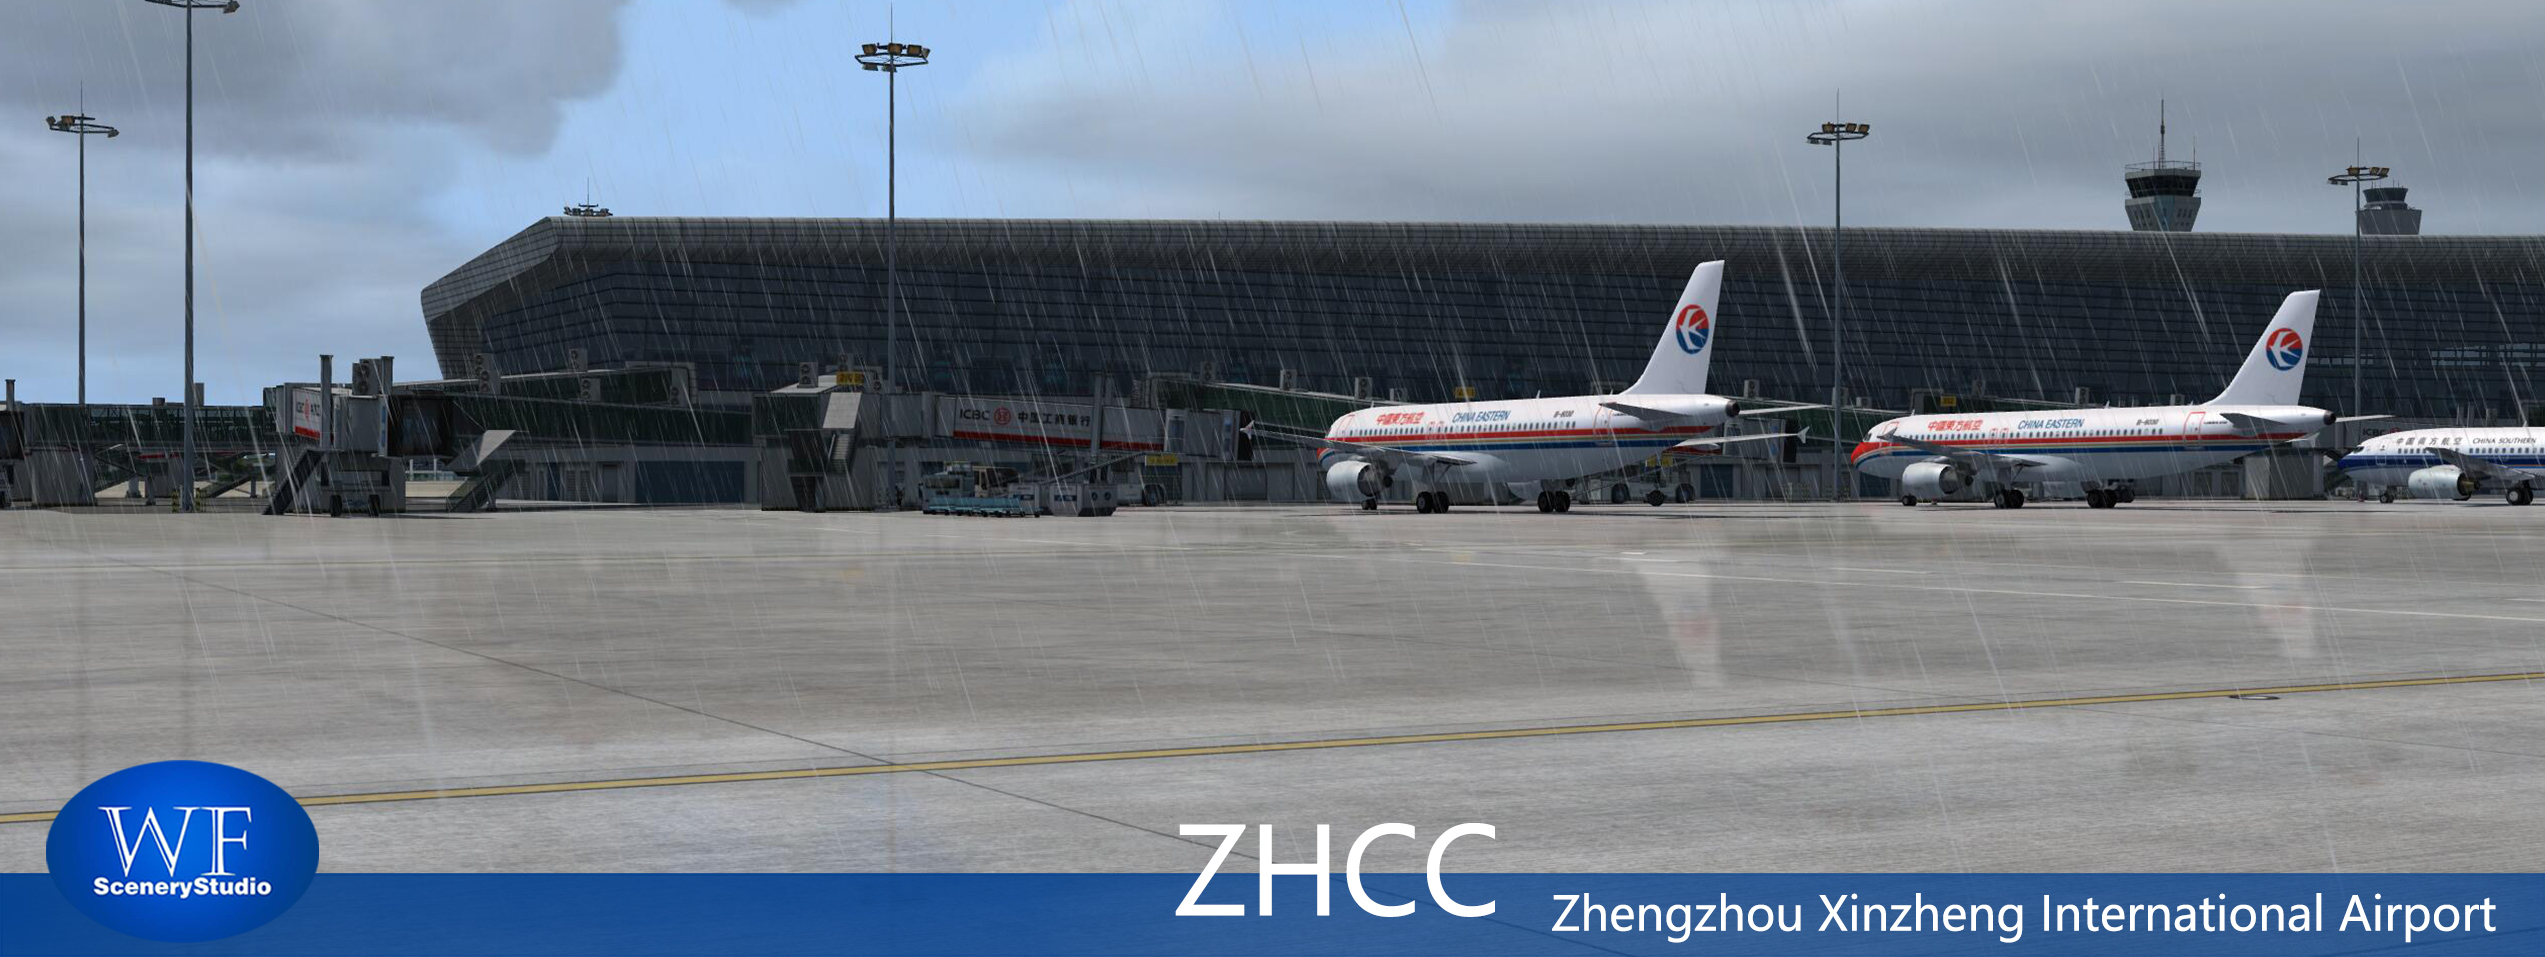 郑州新郑国际机场发布-4576 